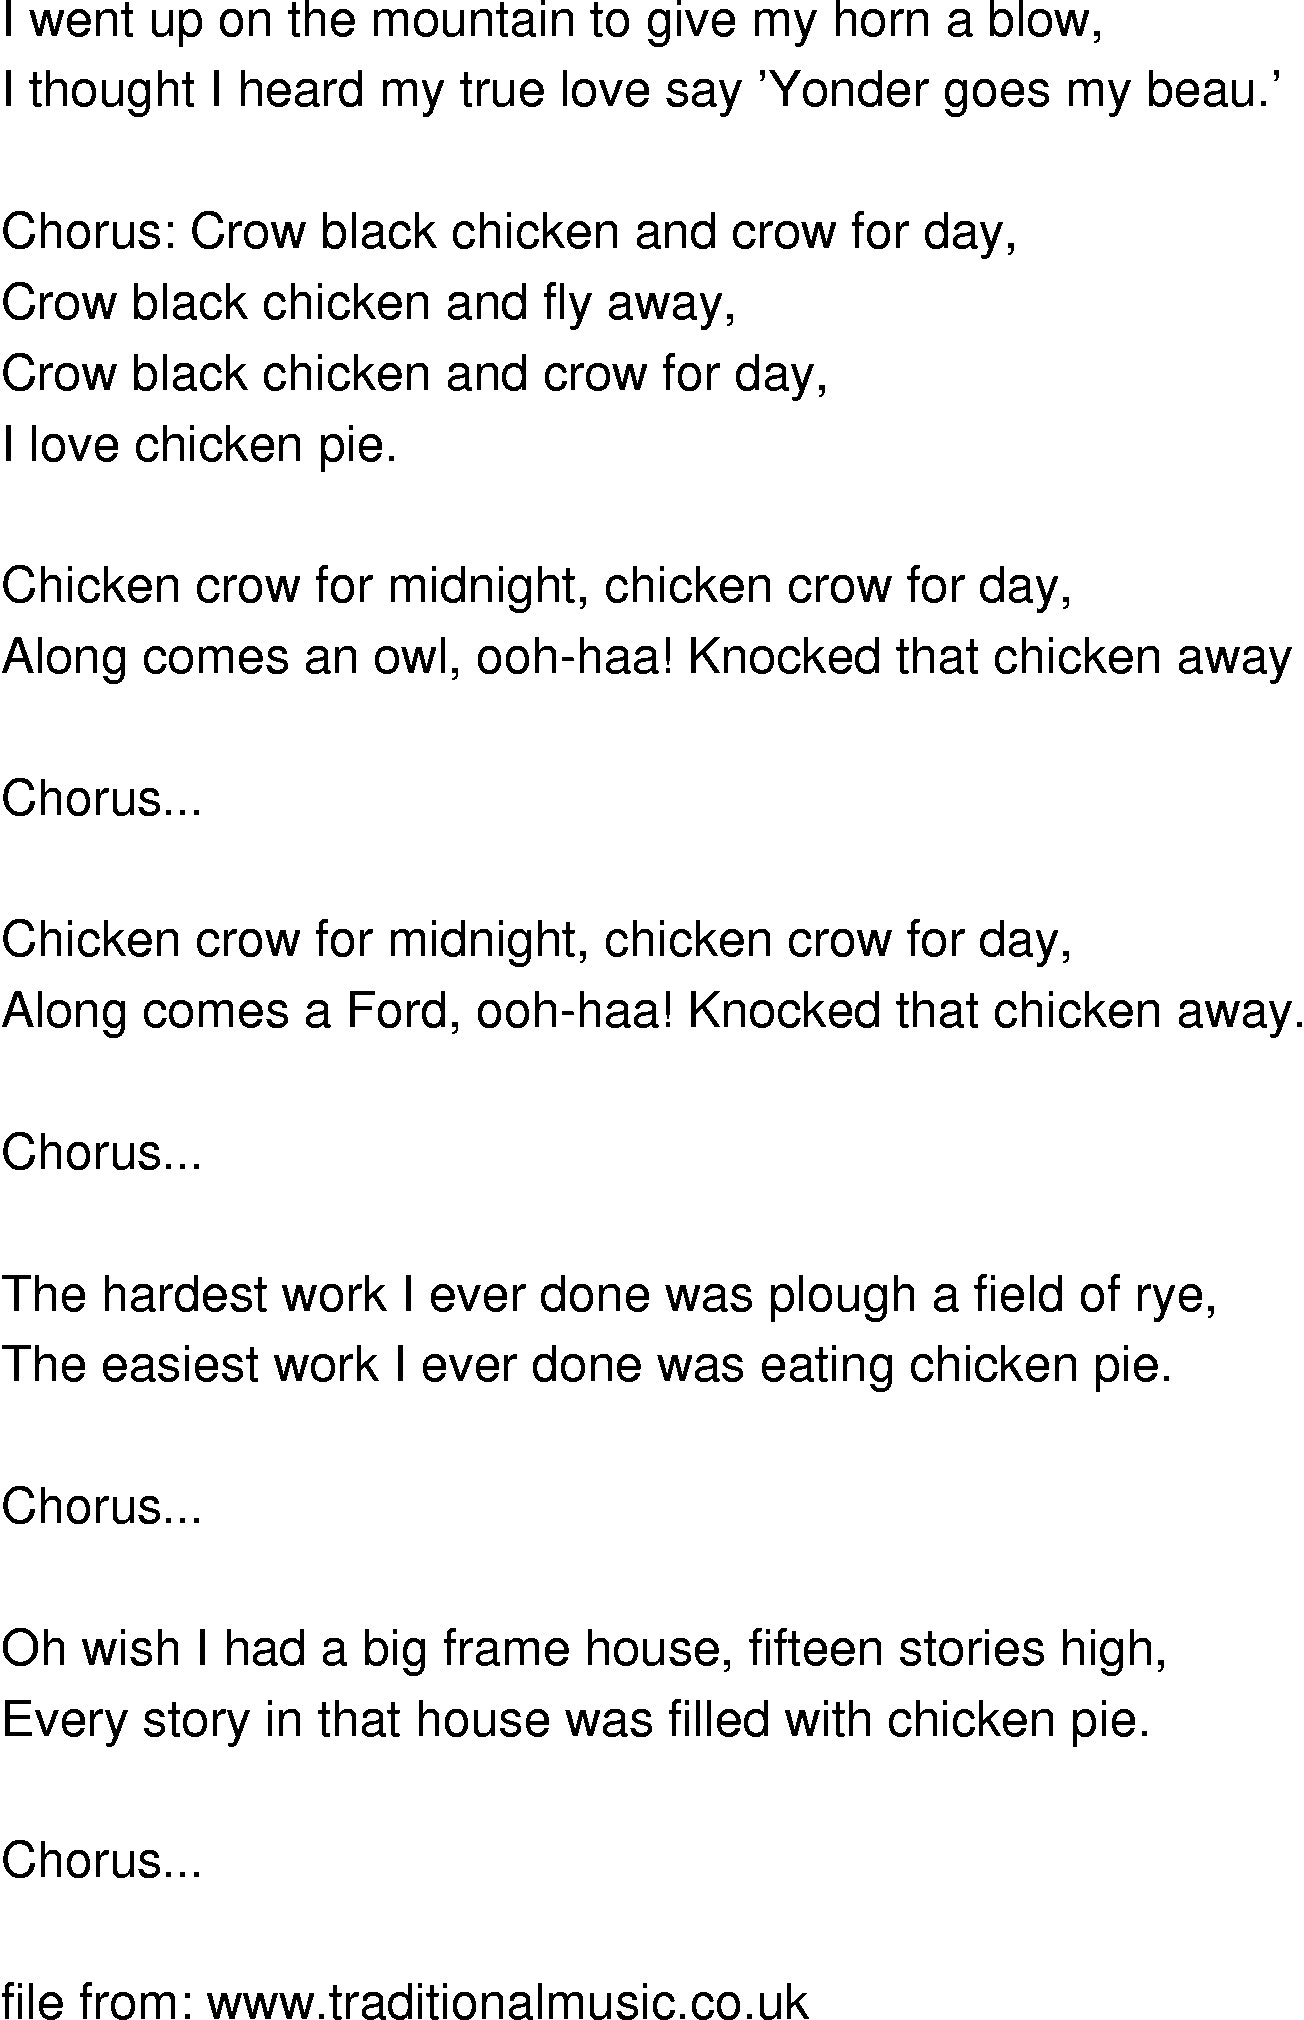 Chicken Fried Lyrics
 chicken song lyrics